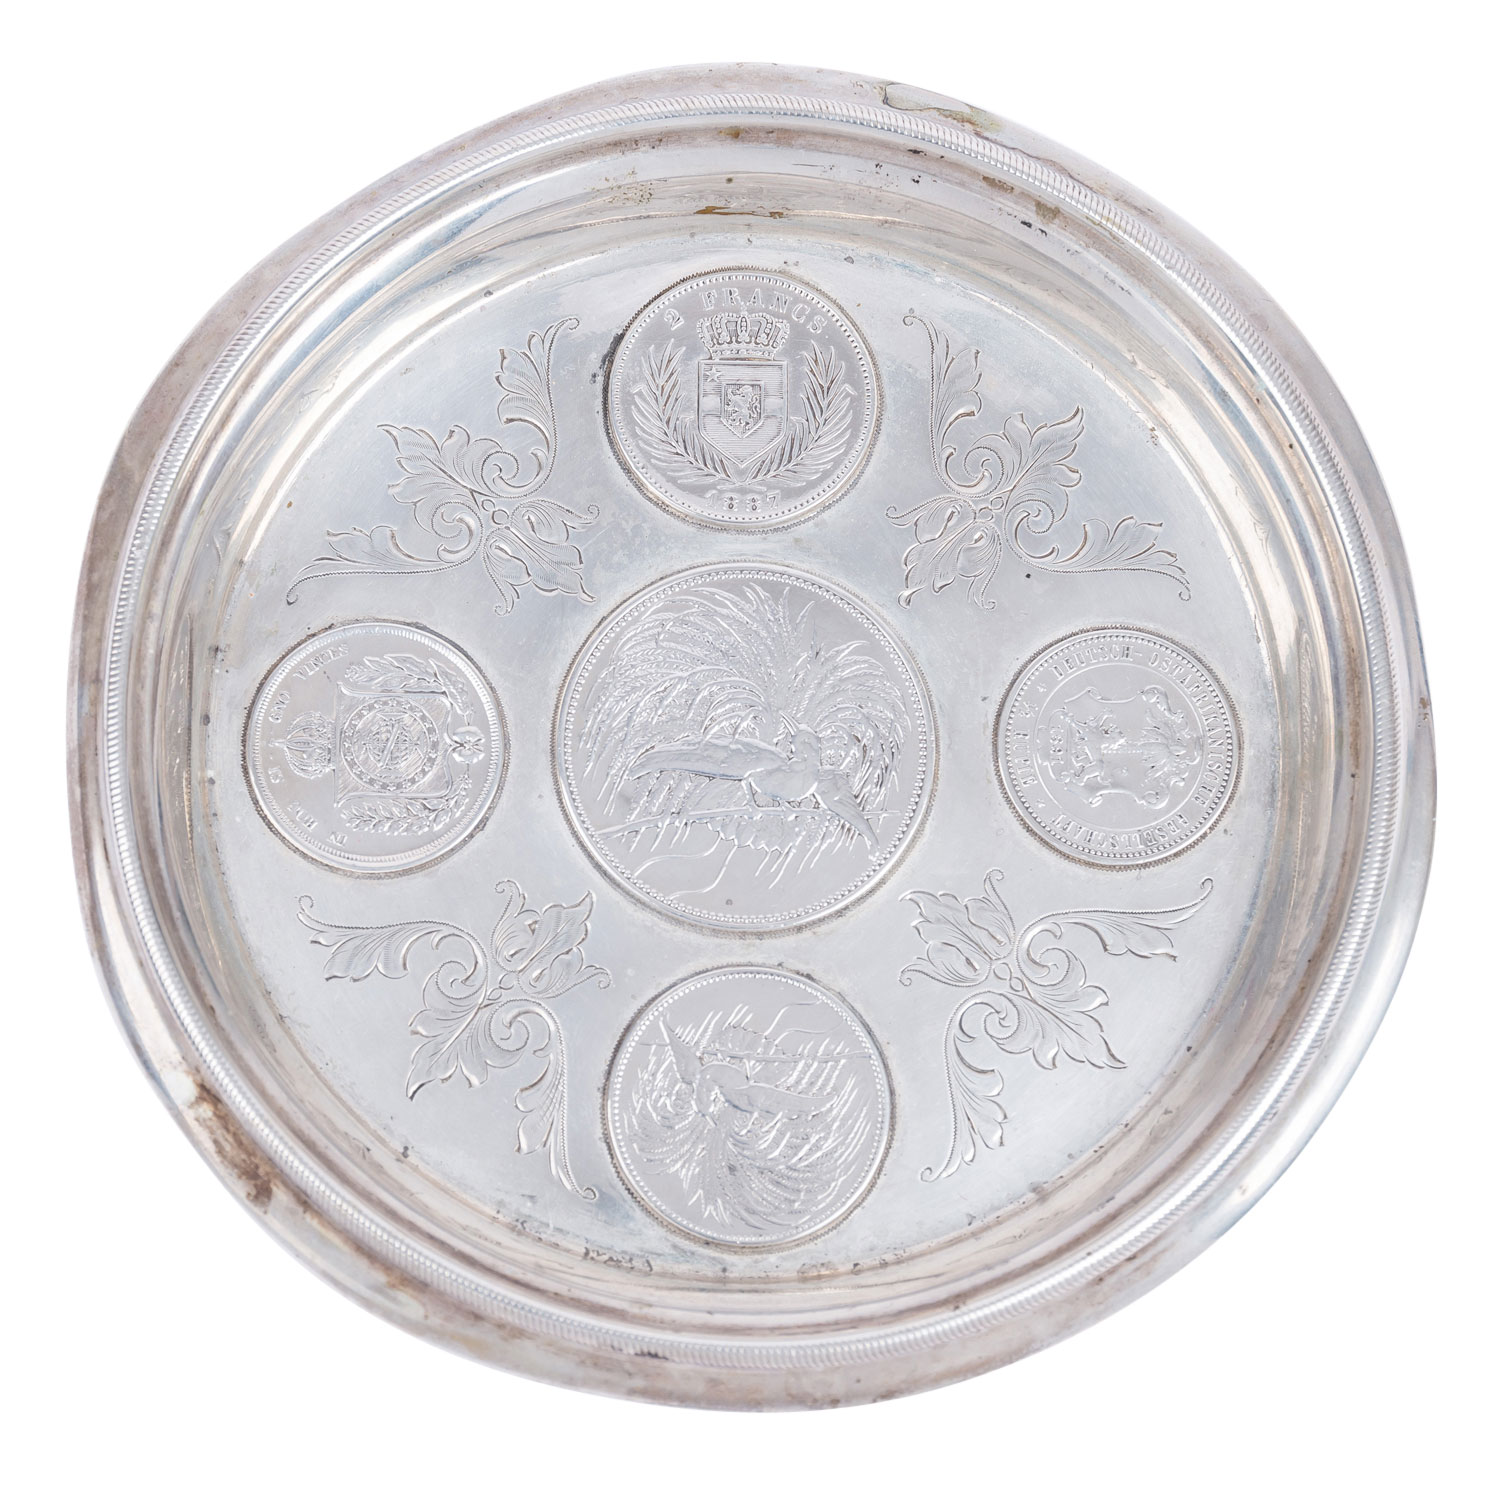 Historischer Flaschenteller mit 5 Münzen aus Silber, um 1900